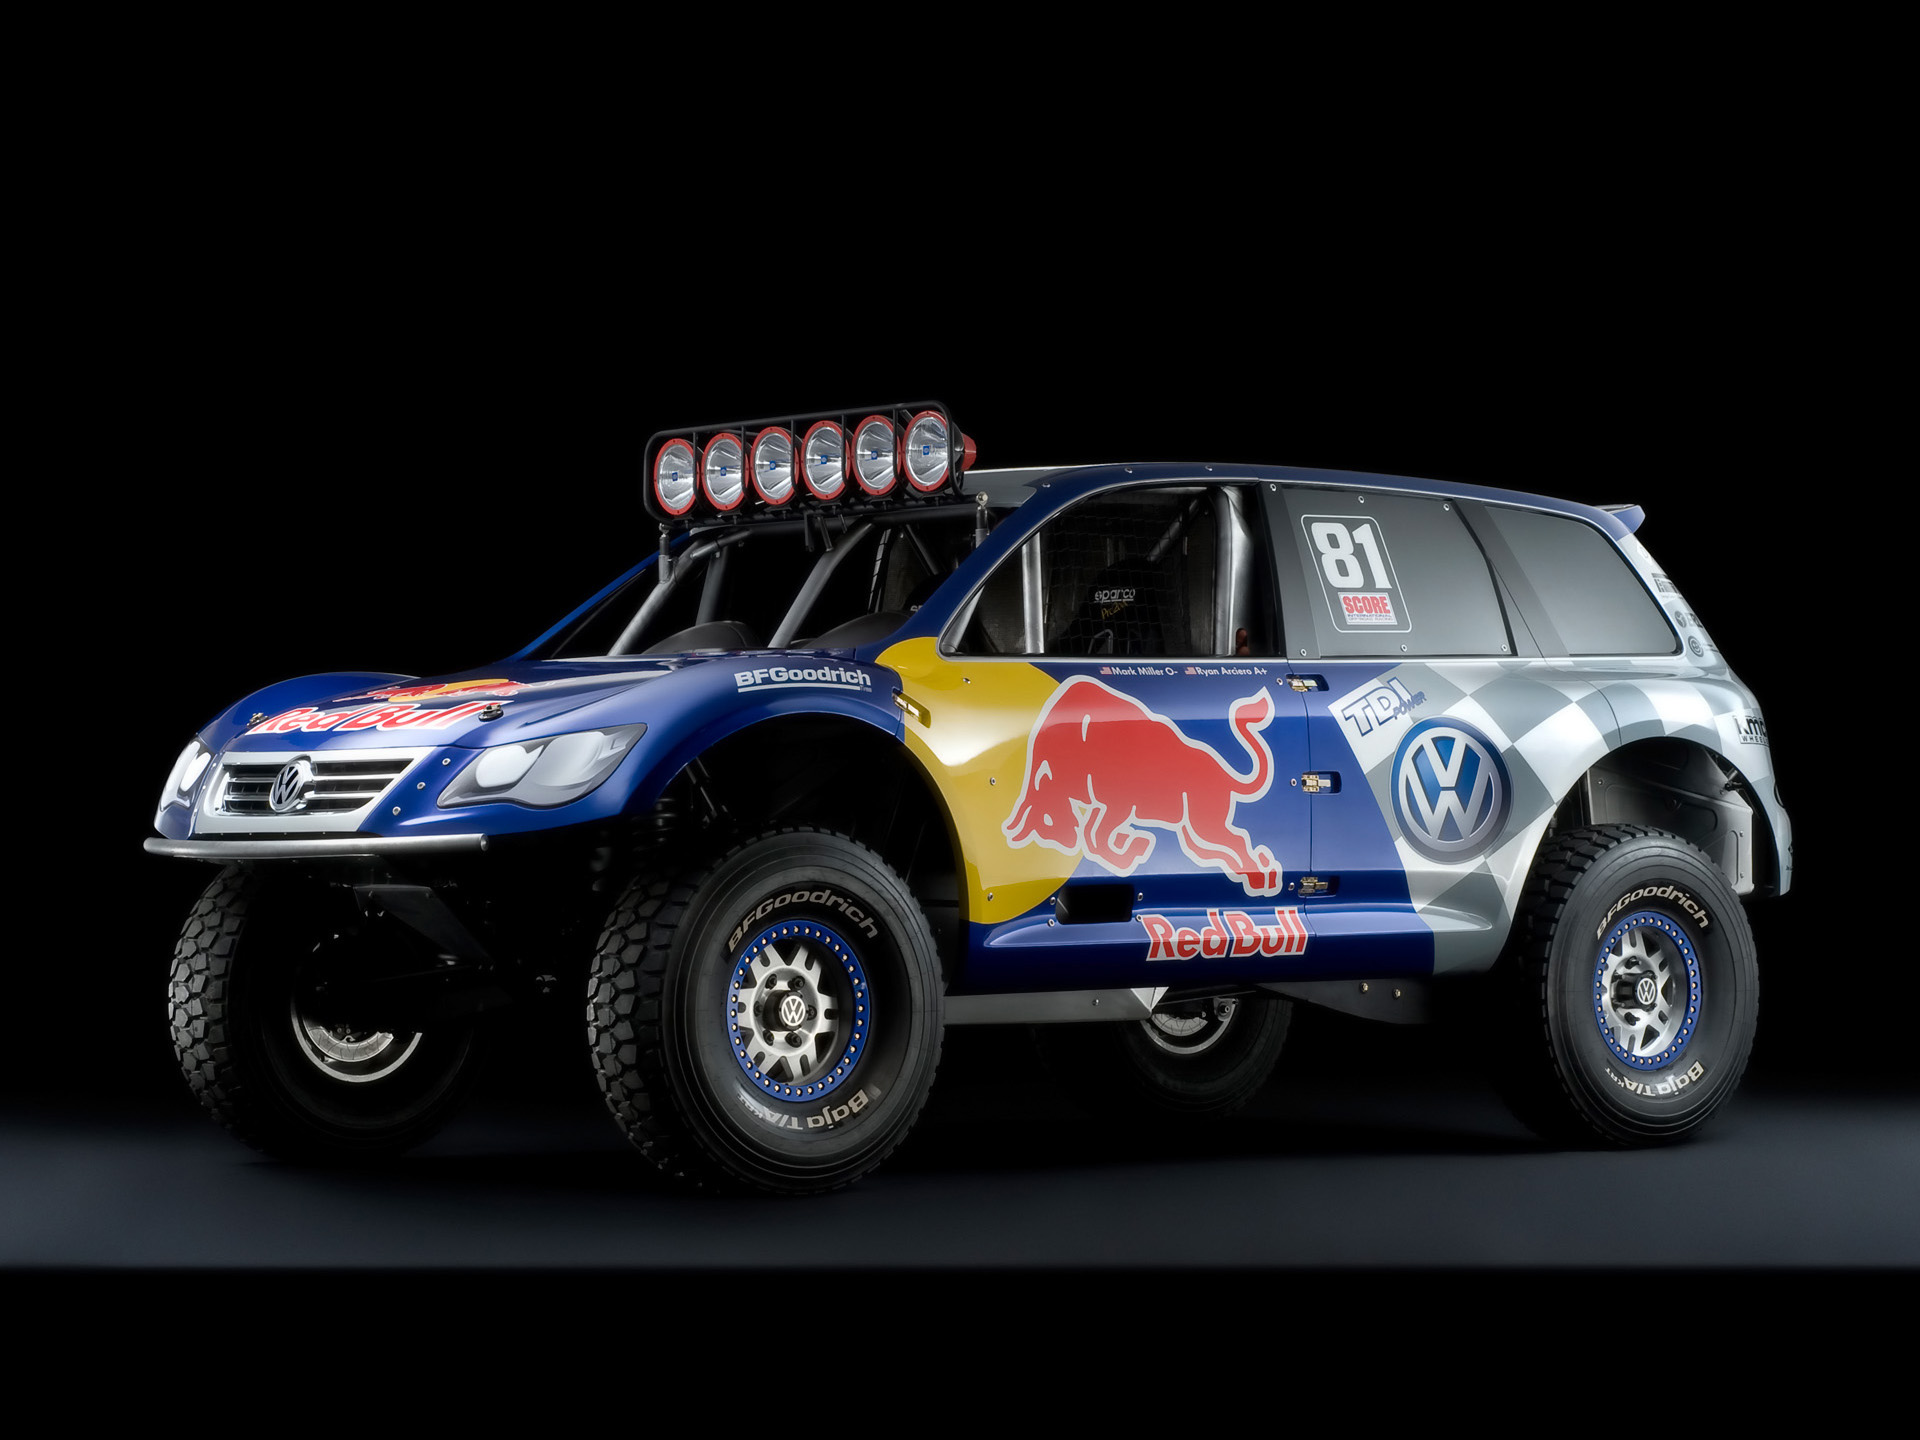 Volkswagen Red Bull Baja Race Touareg Tdi Trophy Truck - Volkswagen Tiguan Rally Car , HD Wallpaper & Backgrounds